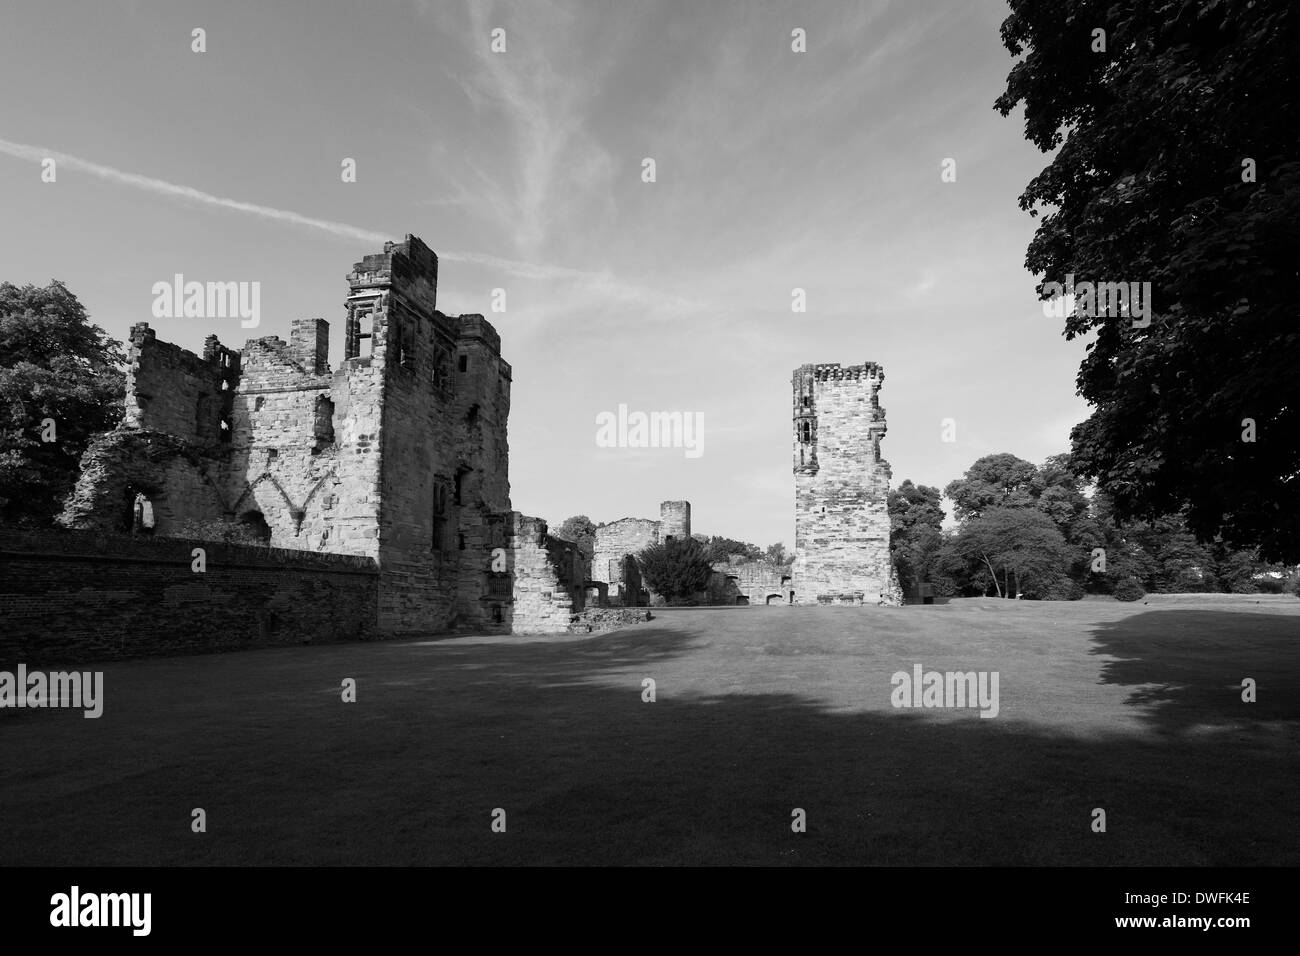 The ruins of Ashby de la Zouch Castle, Ashby de la Zouch, Leicestershire, England; Britain; UK Stock Photo